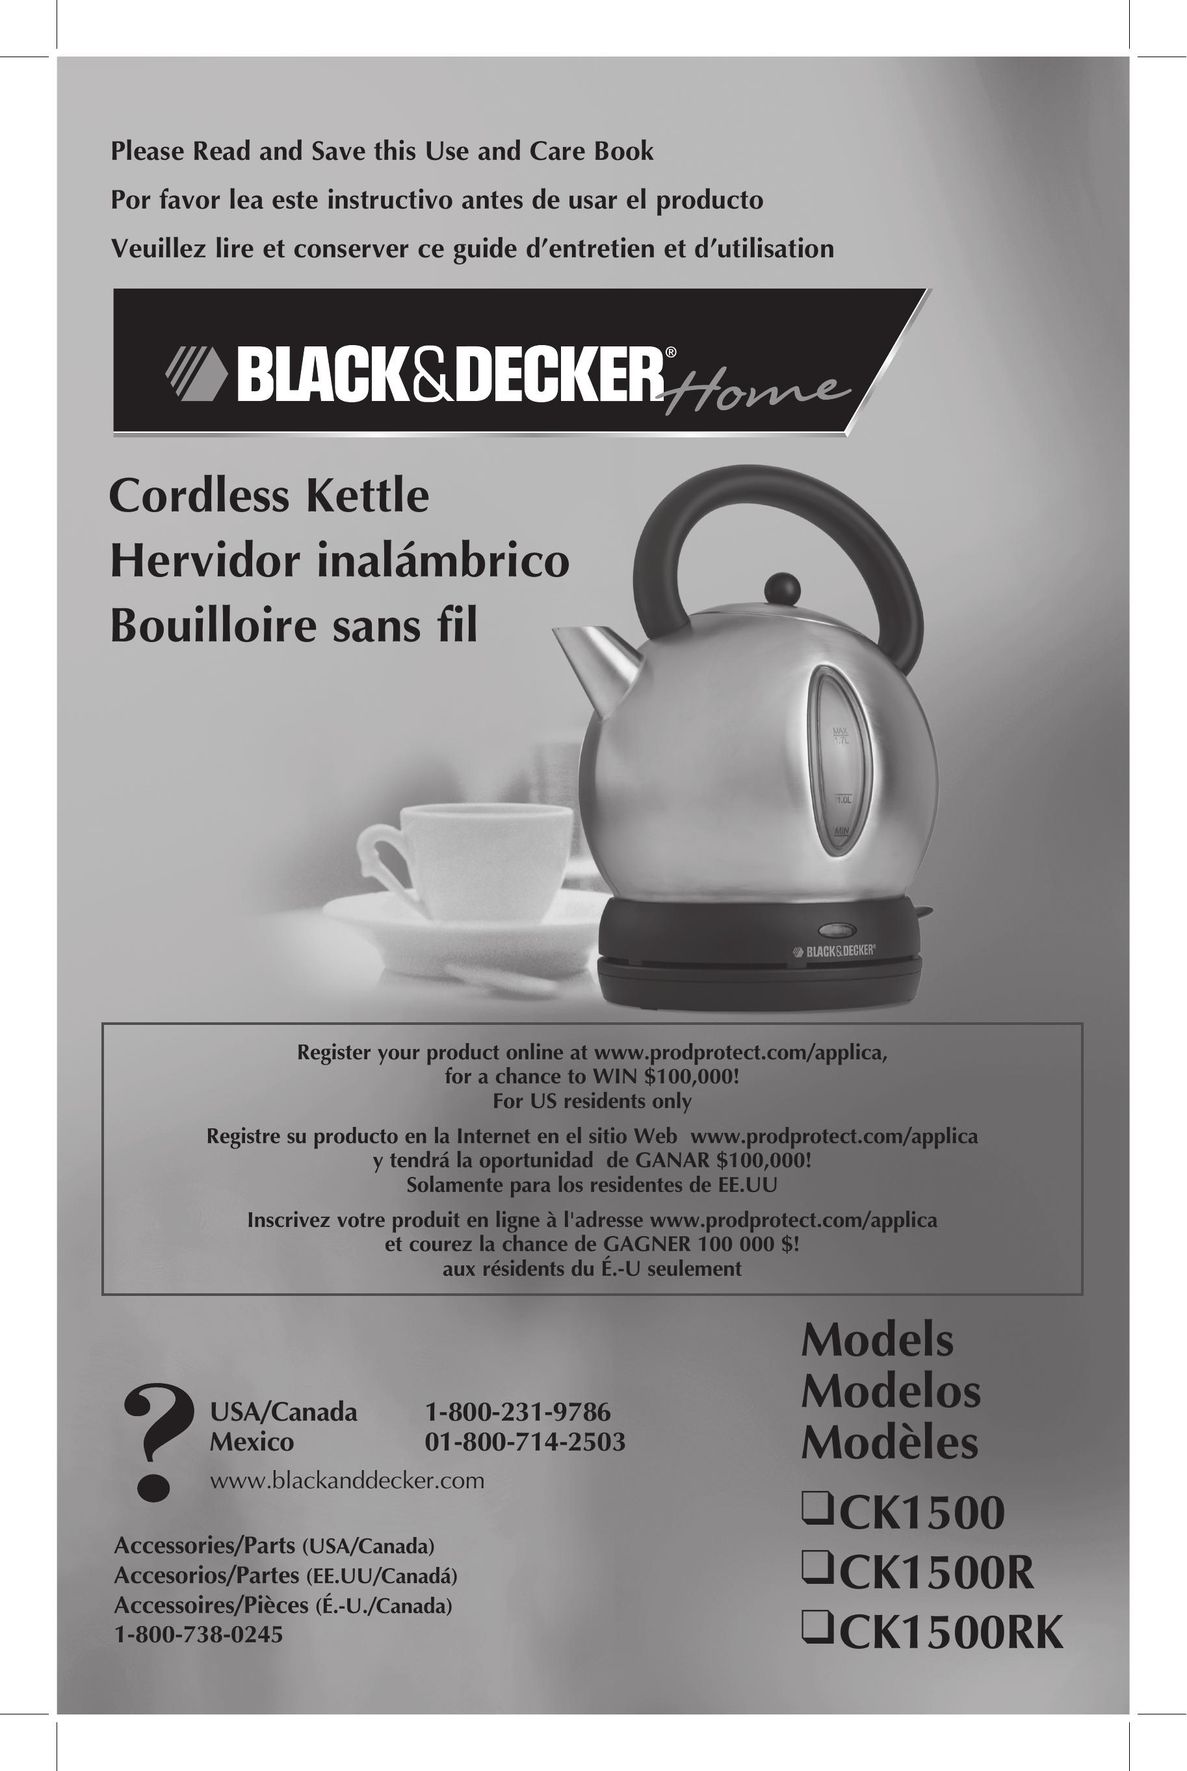 Black & Decker CK1500RK Hot Beverage Maker User Manual